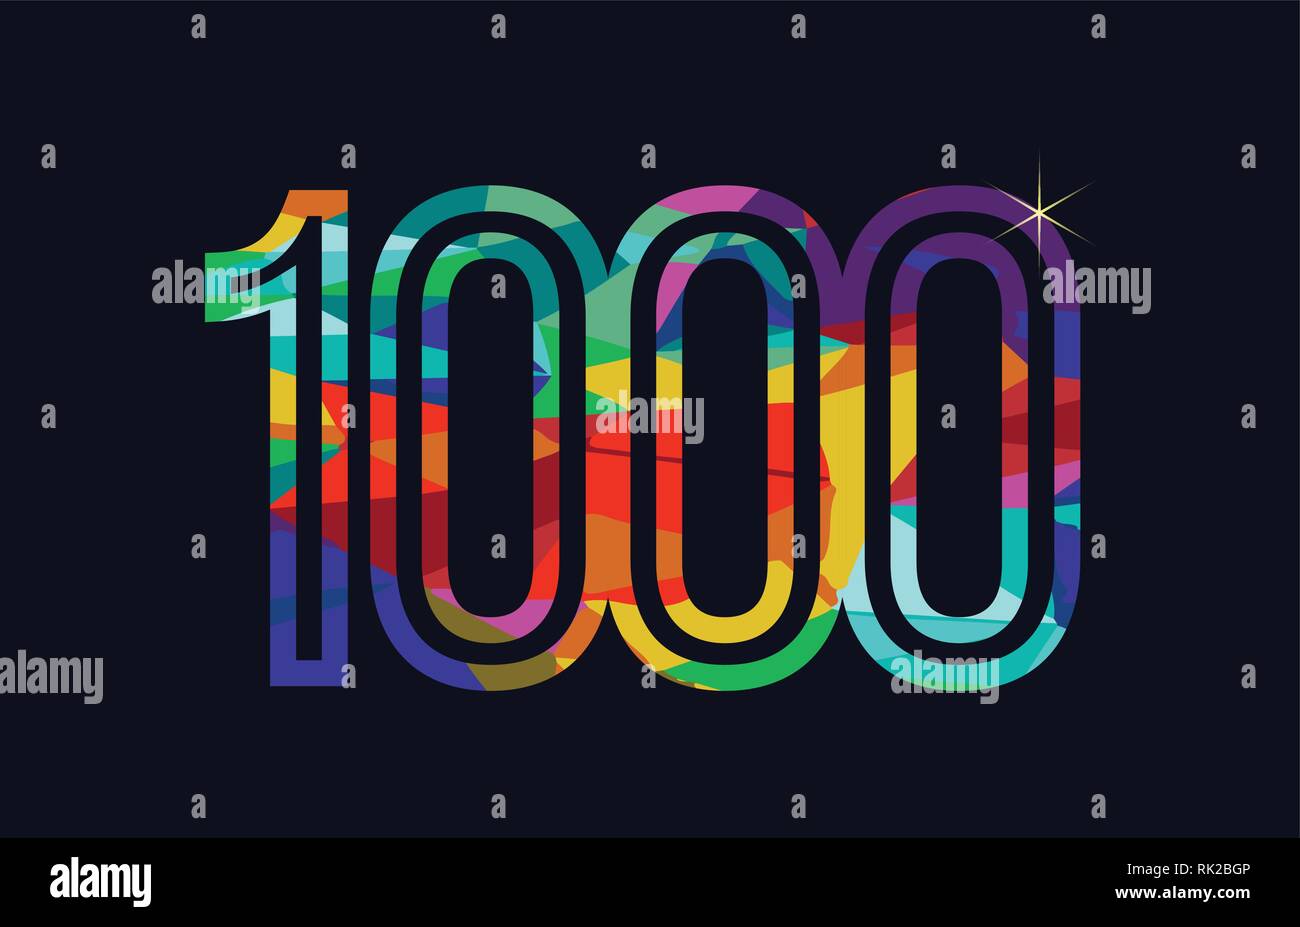 Farbigen Regenbogen Zahl 1000 Logo Design Geeignet Fur Ein Unternehmen Oder Ein Geschaft Stock Vektorgrafik Alamy